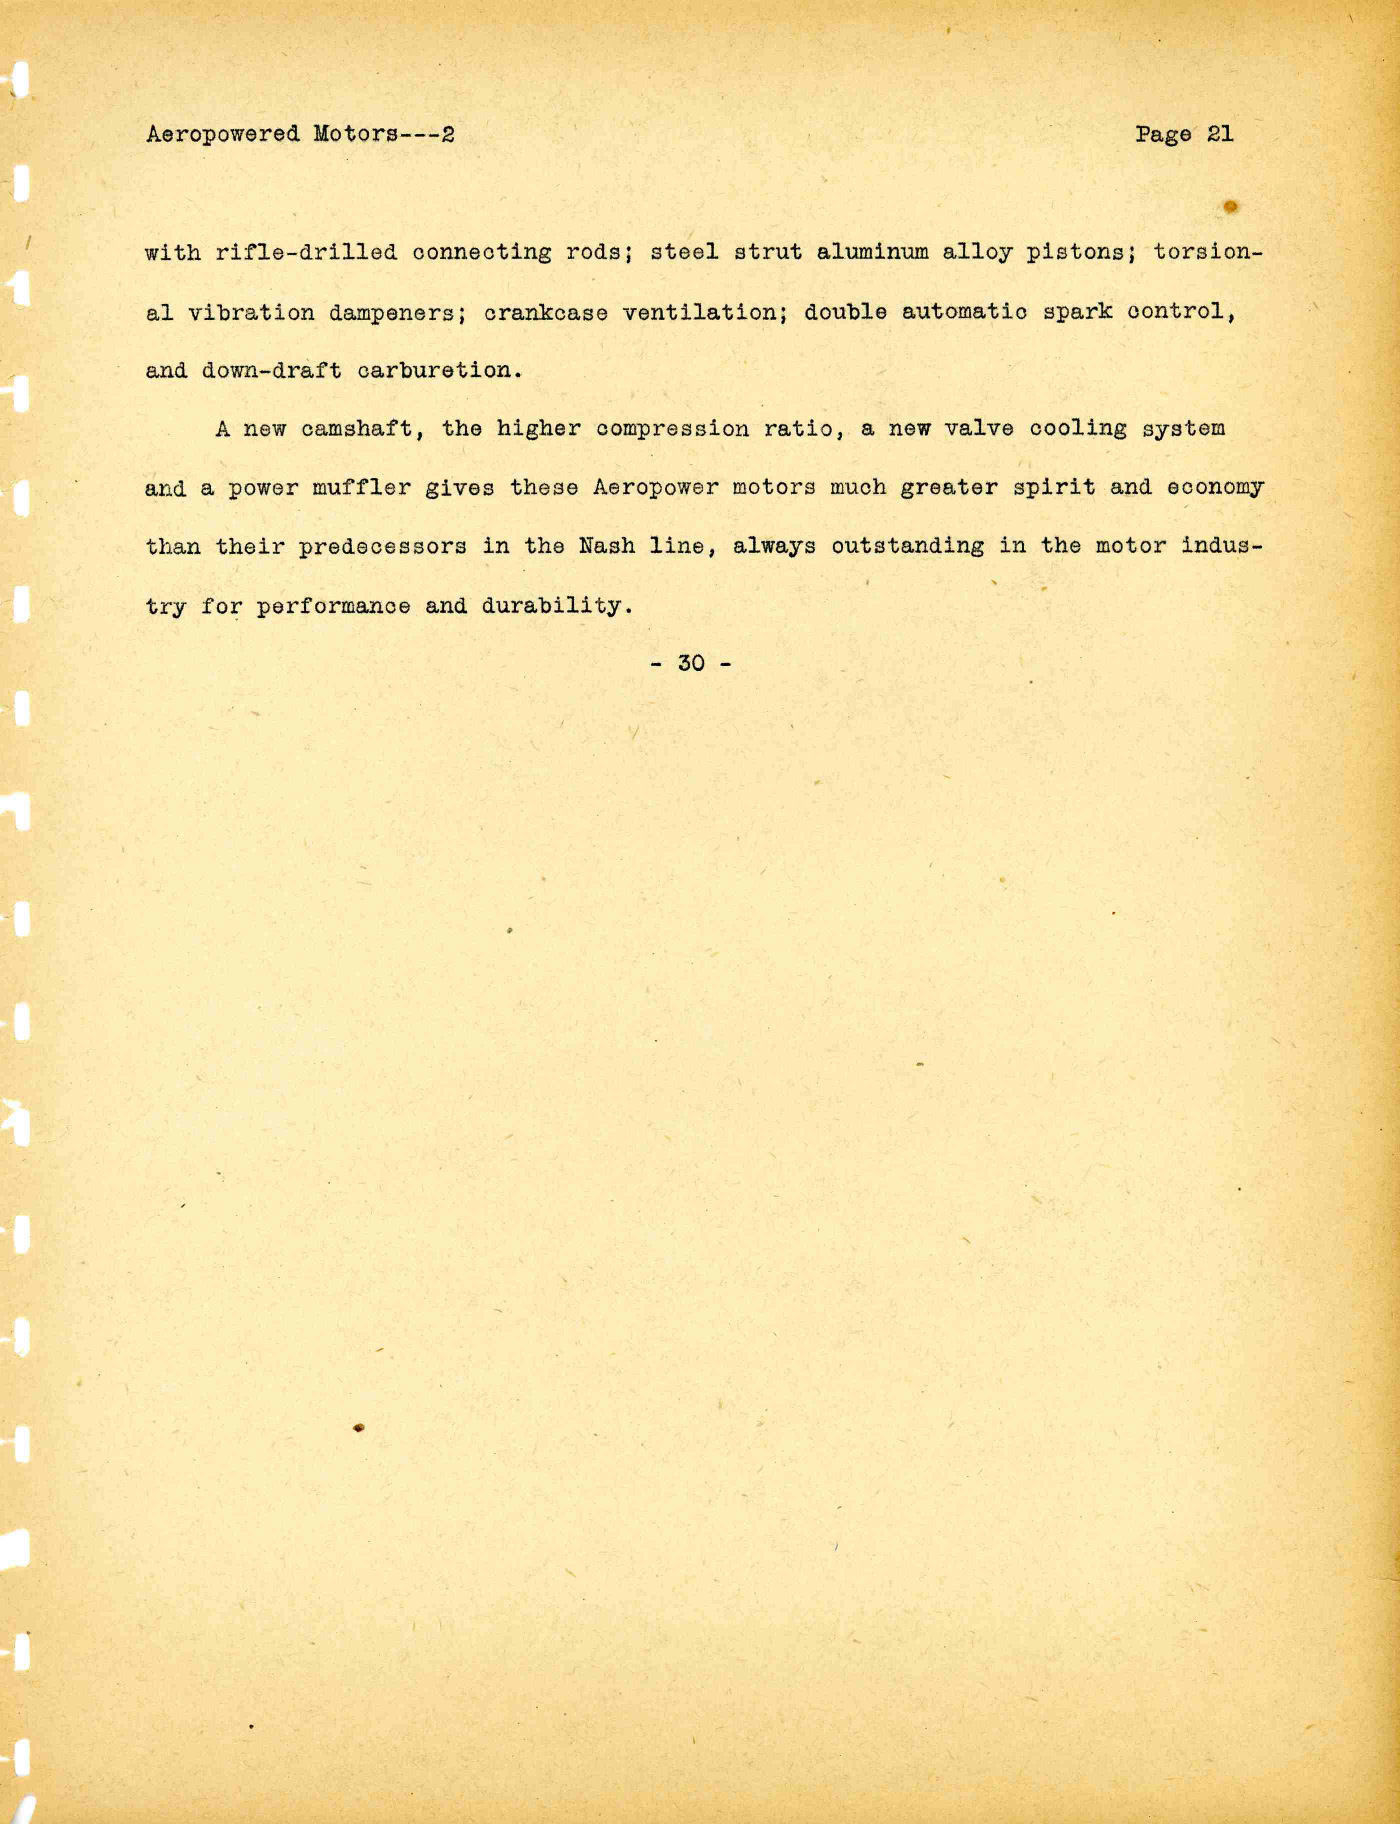 1941 Nash Press Kit Page 5